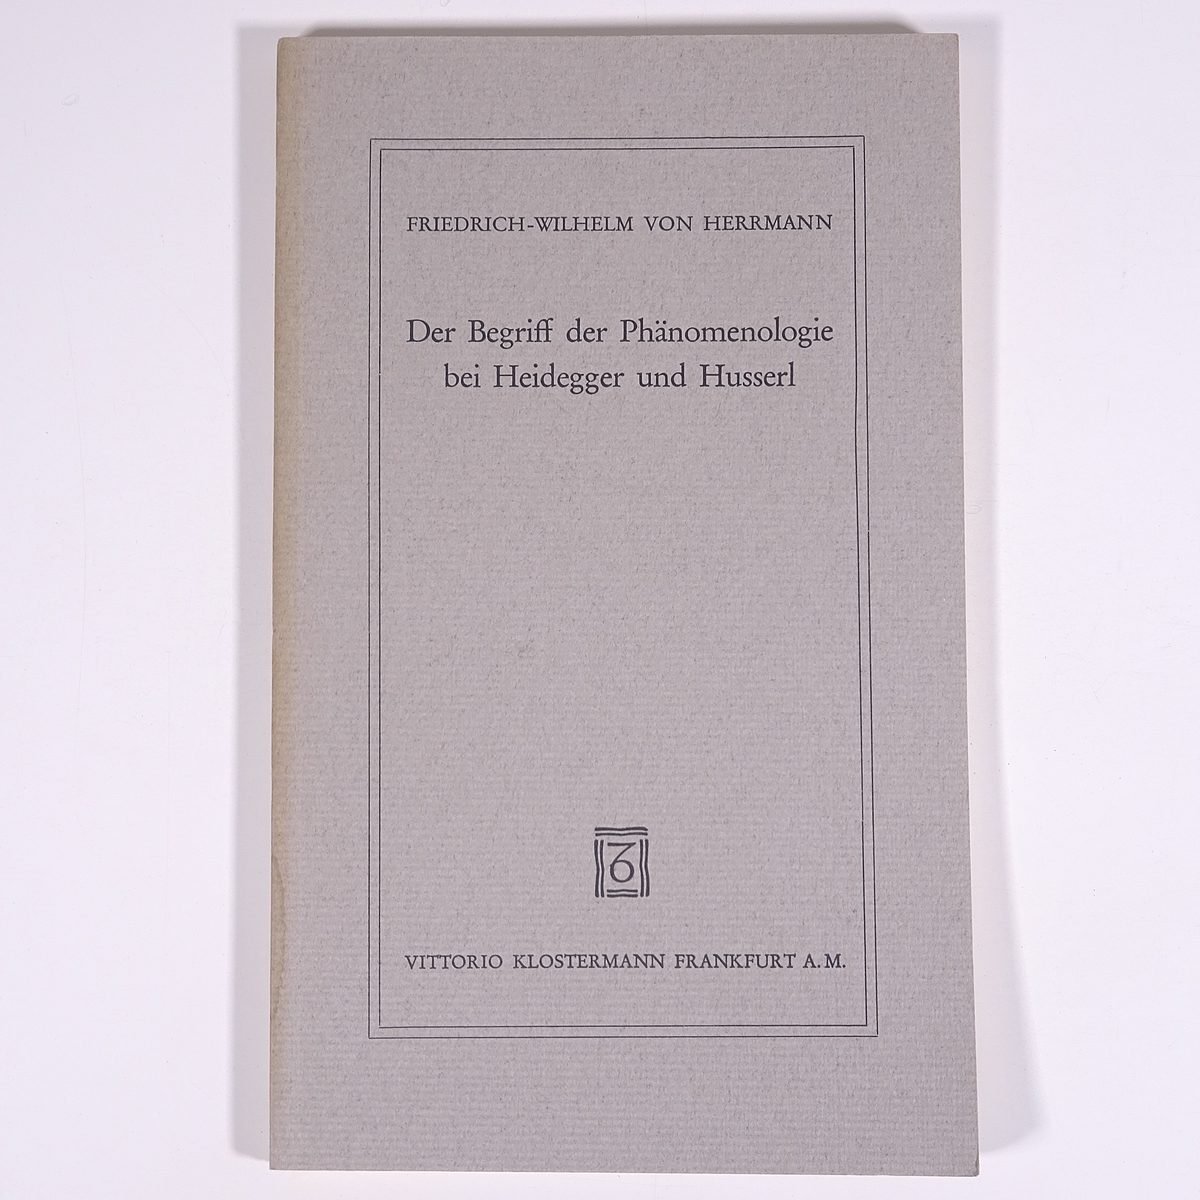 【ドイツ語洋書】 Der Begriff der Phanomenologie bei Heidegger und Husserl ハイデガーとフッサールにおける現象学の概念 1981 哲学_画像1